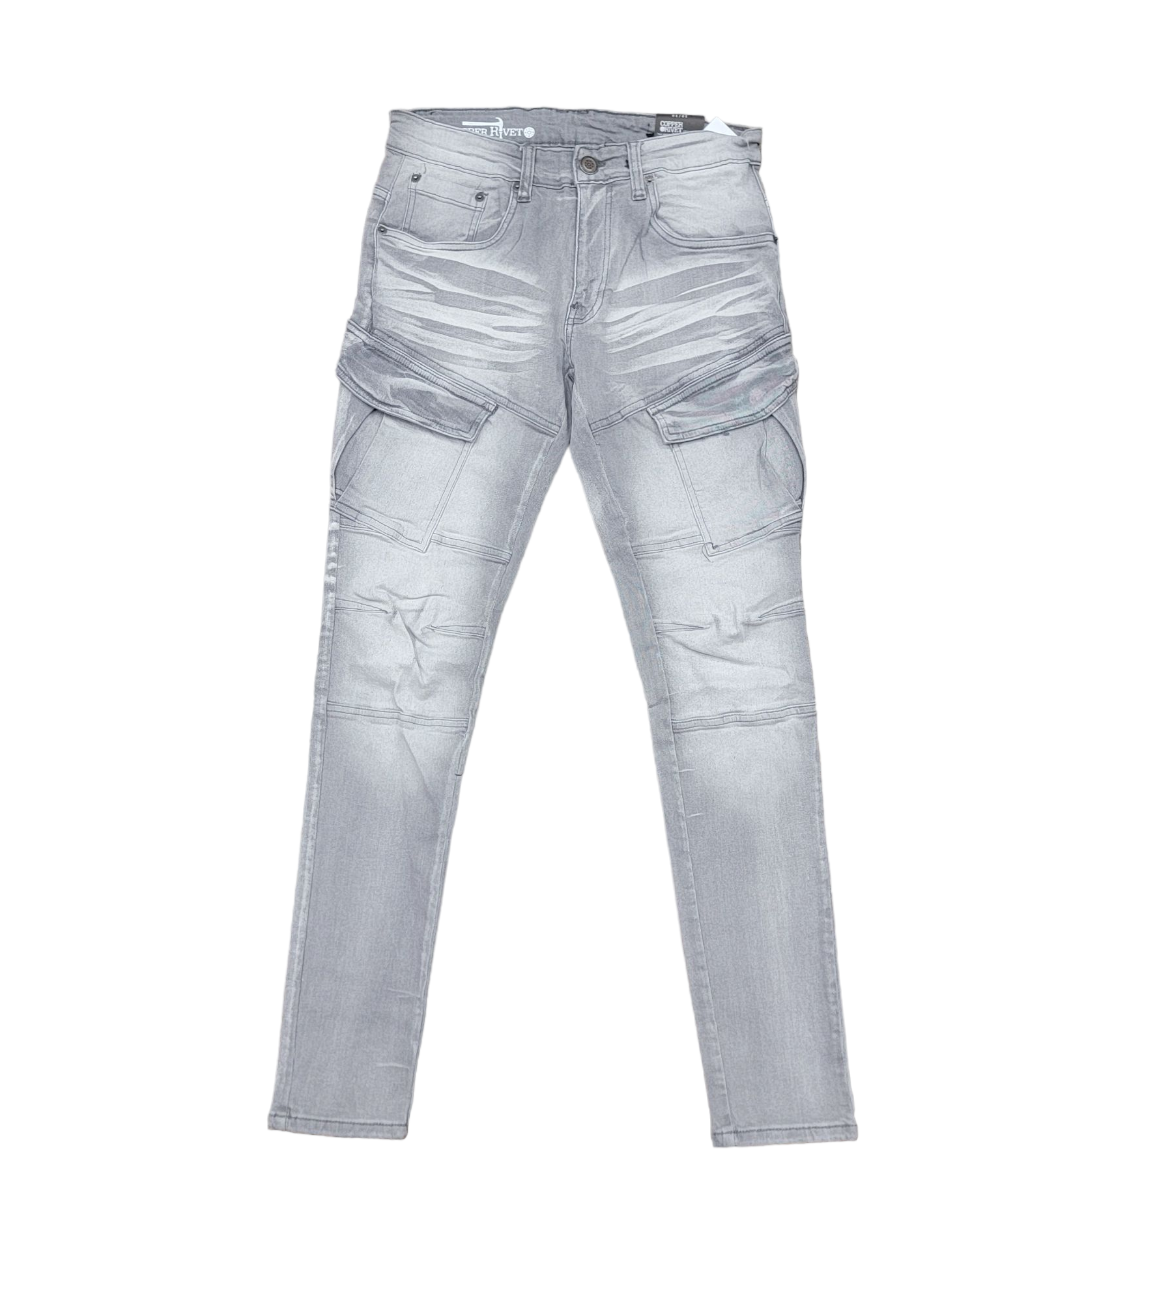 Copper Rivet Side Pocket Jeans Grey